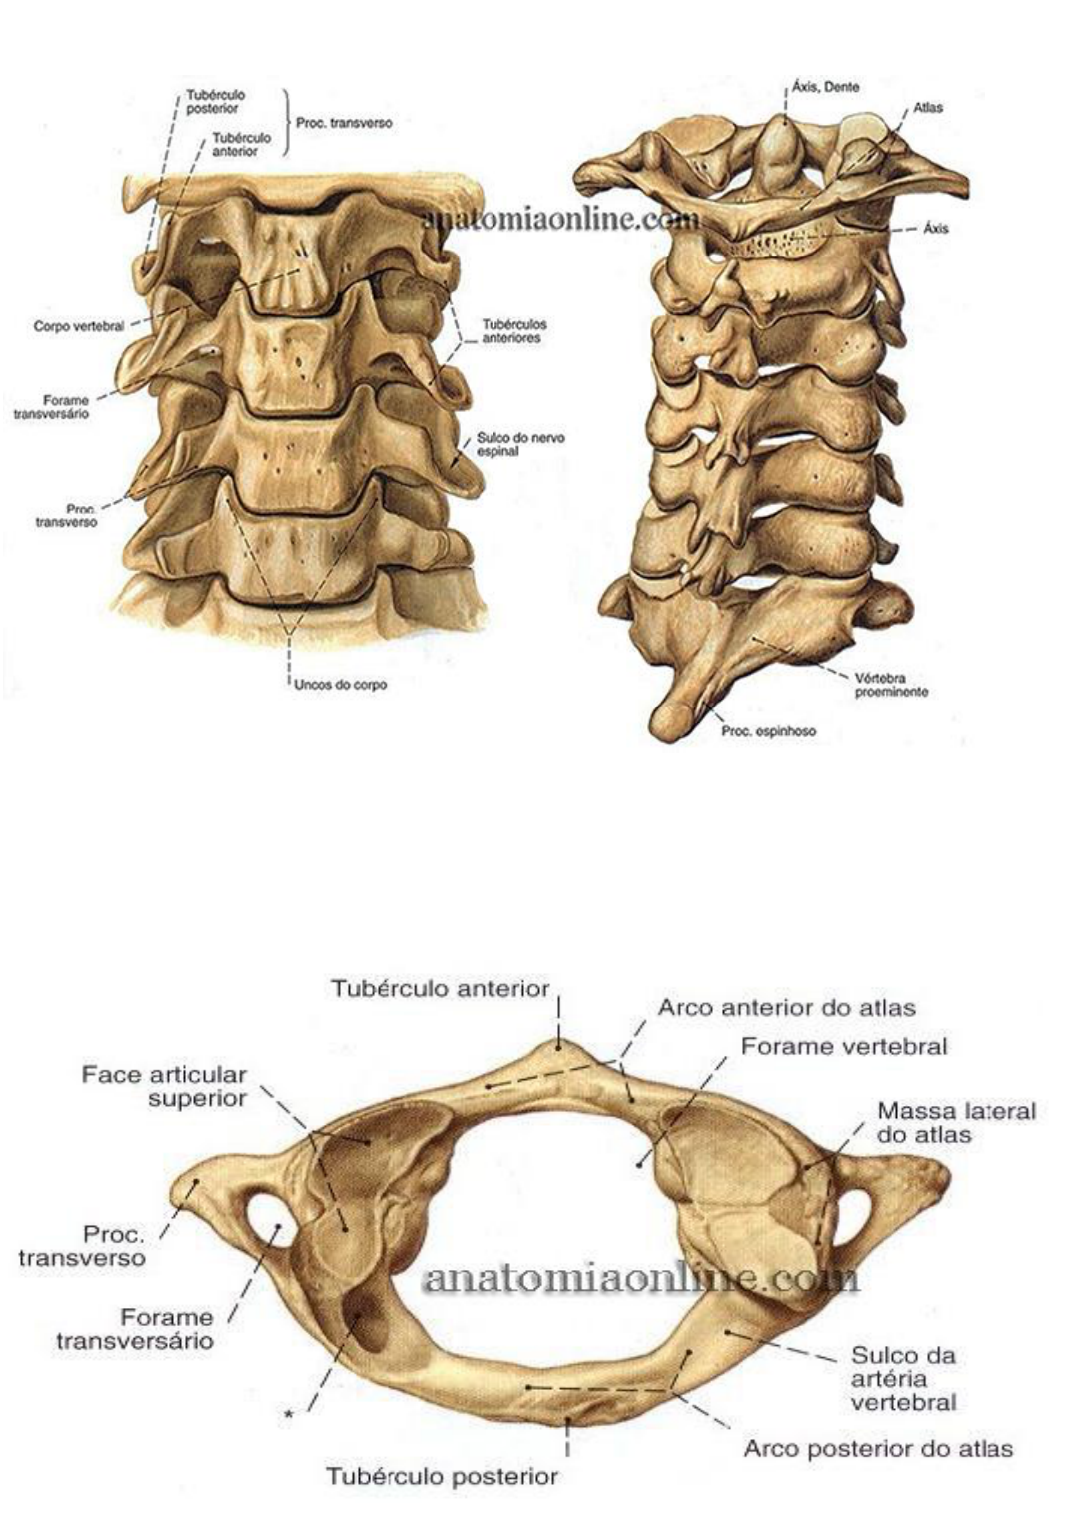 Os Ossos da Coluna Vertebral - Anatomia Aplicada à Medicina